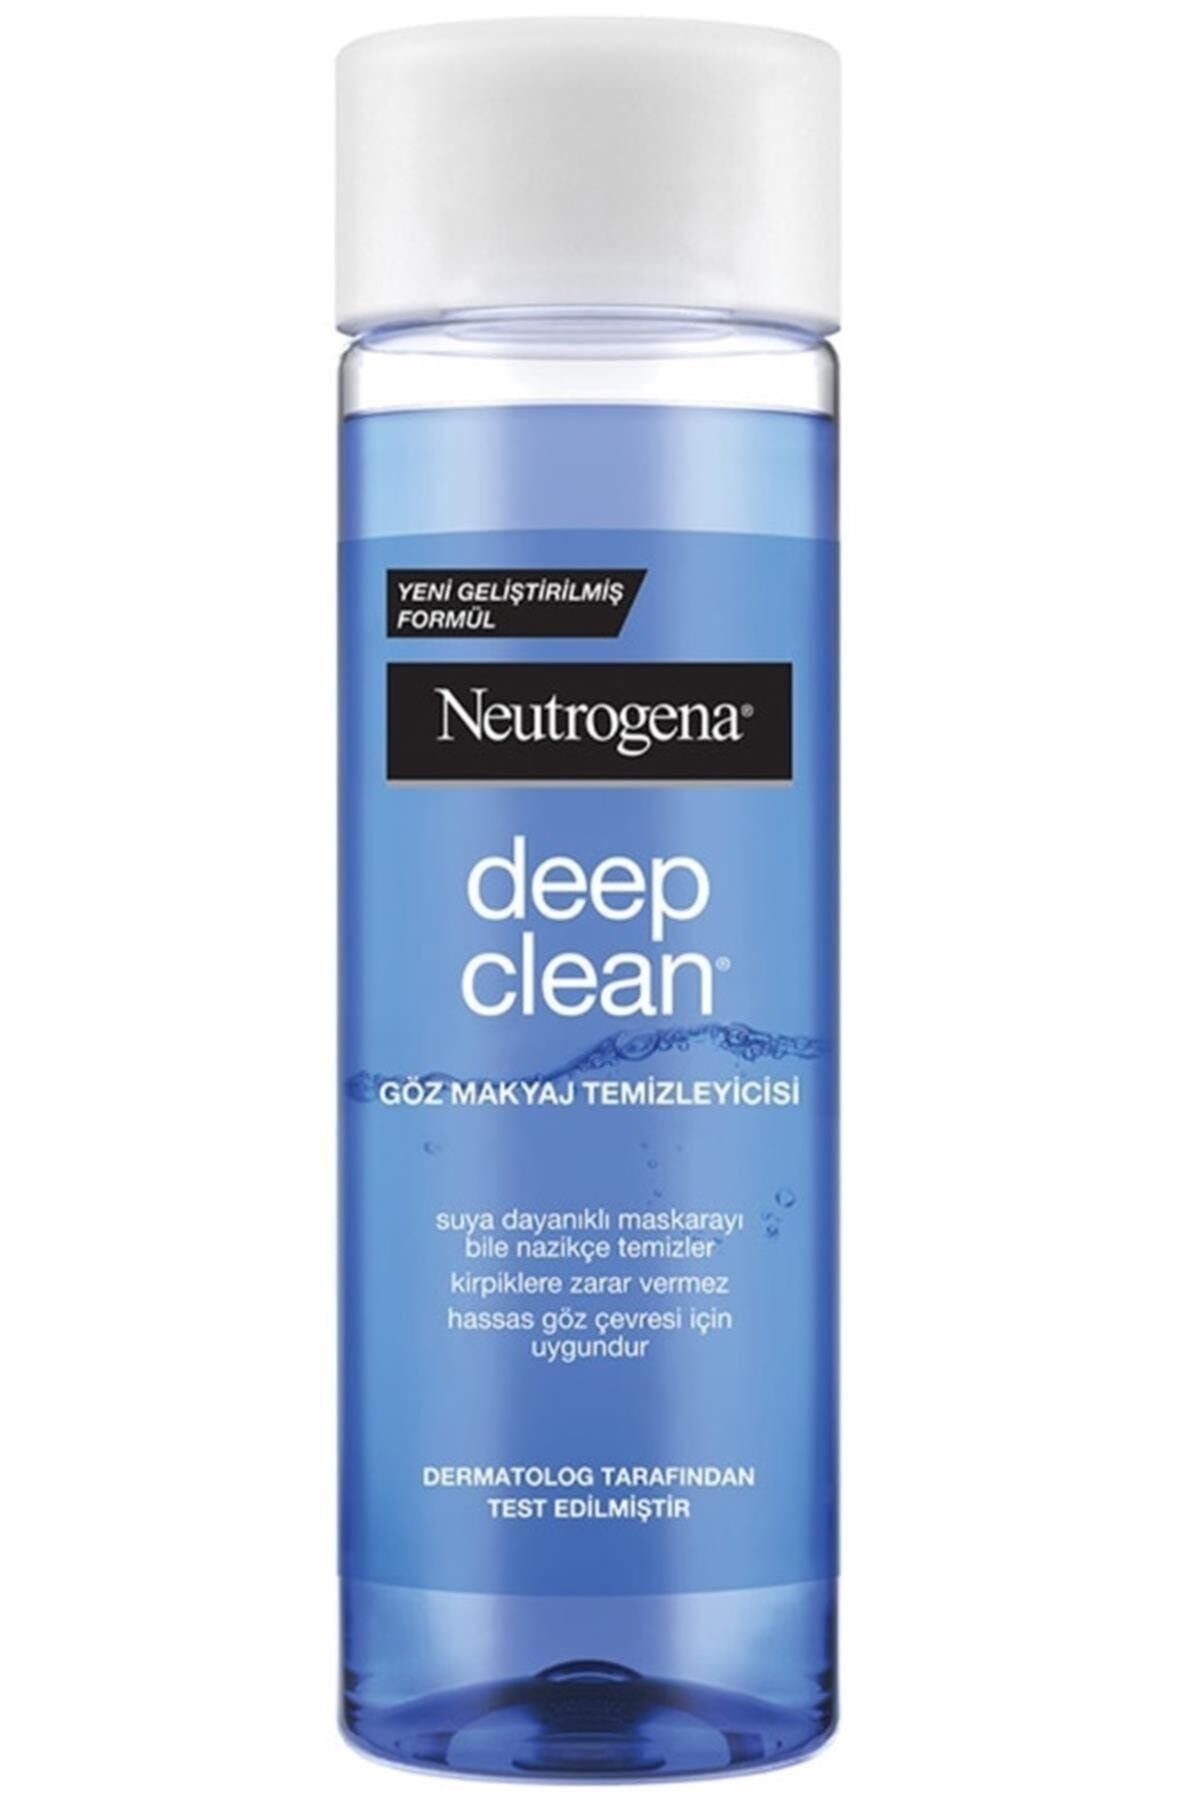 Neutrogena Deep Clean Göz Makyaj Temizleyicisi (suya Dayanaklı Göz Makyajında Etkili Formül, 125 ml)